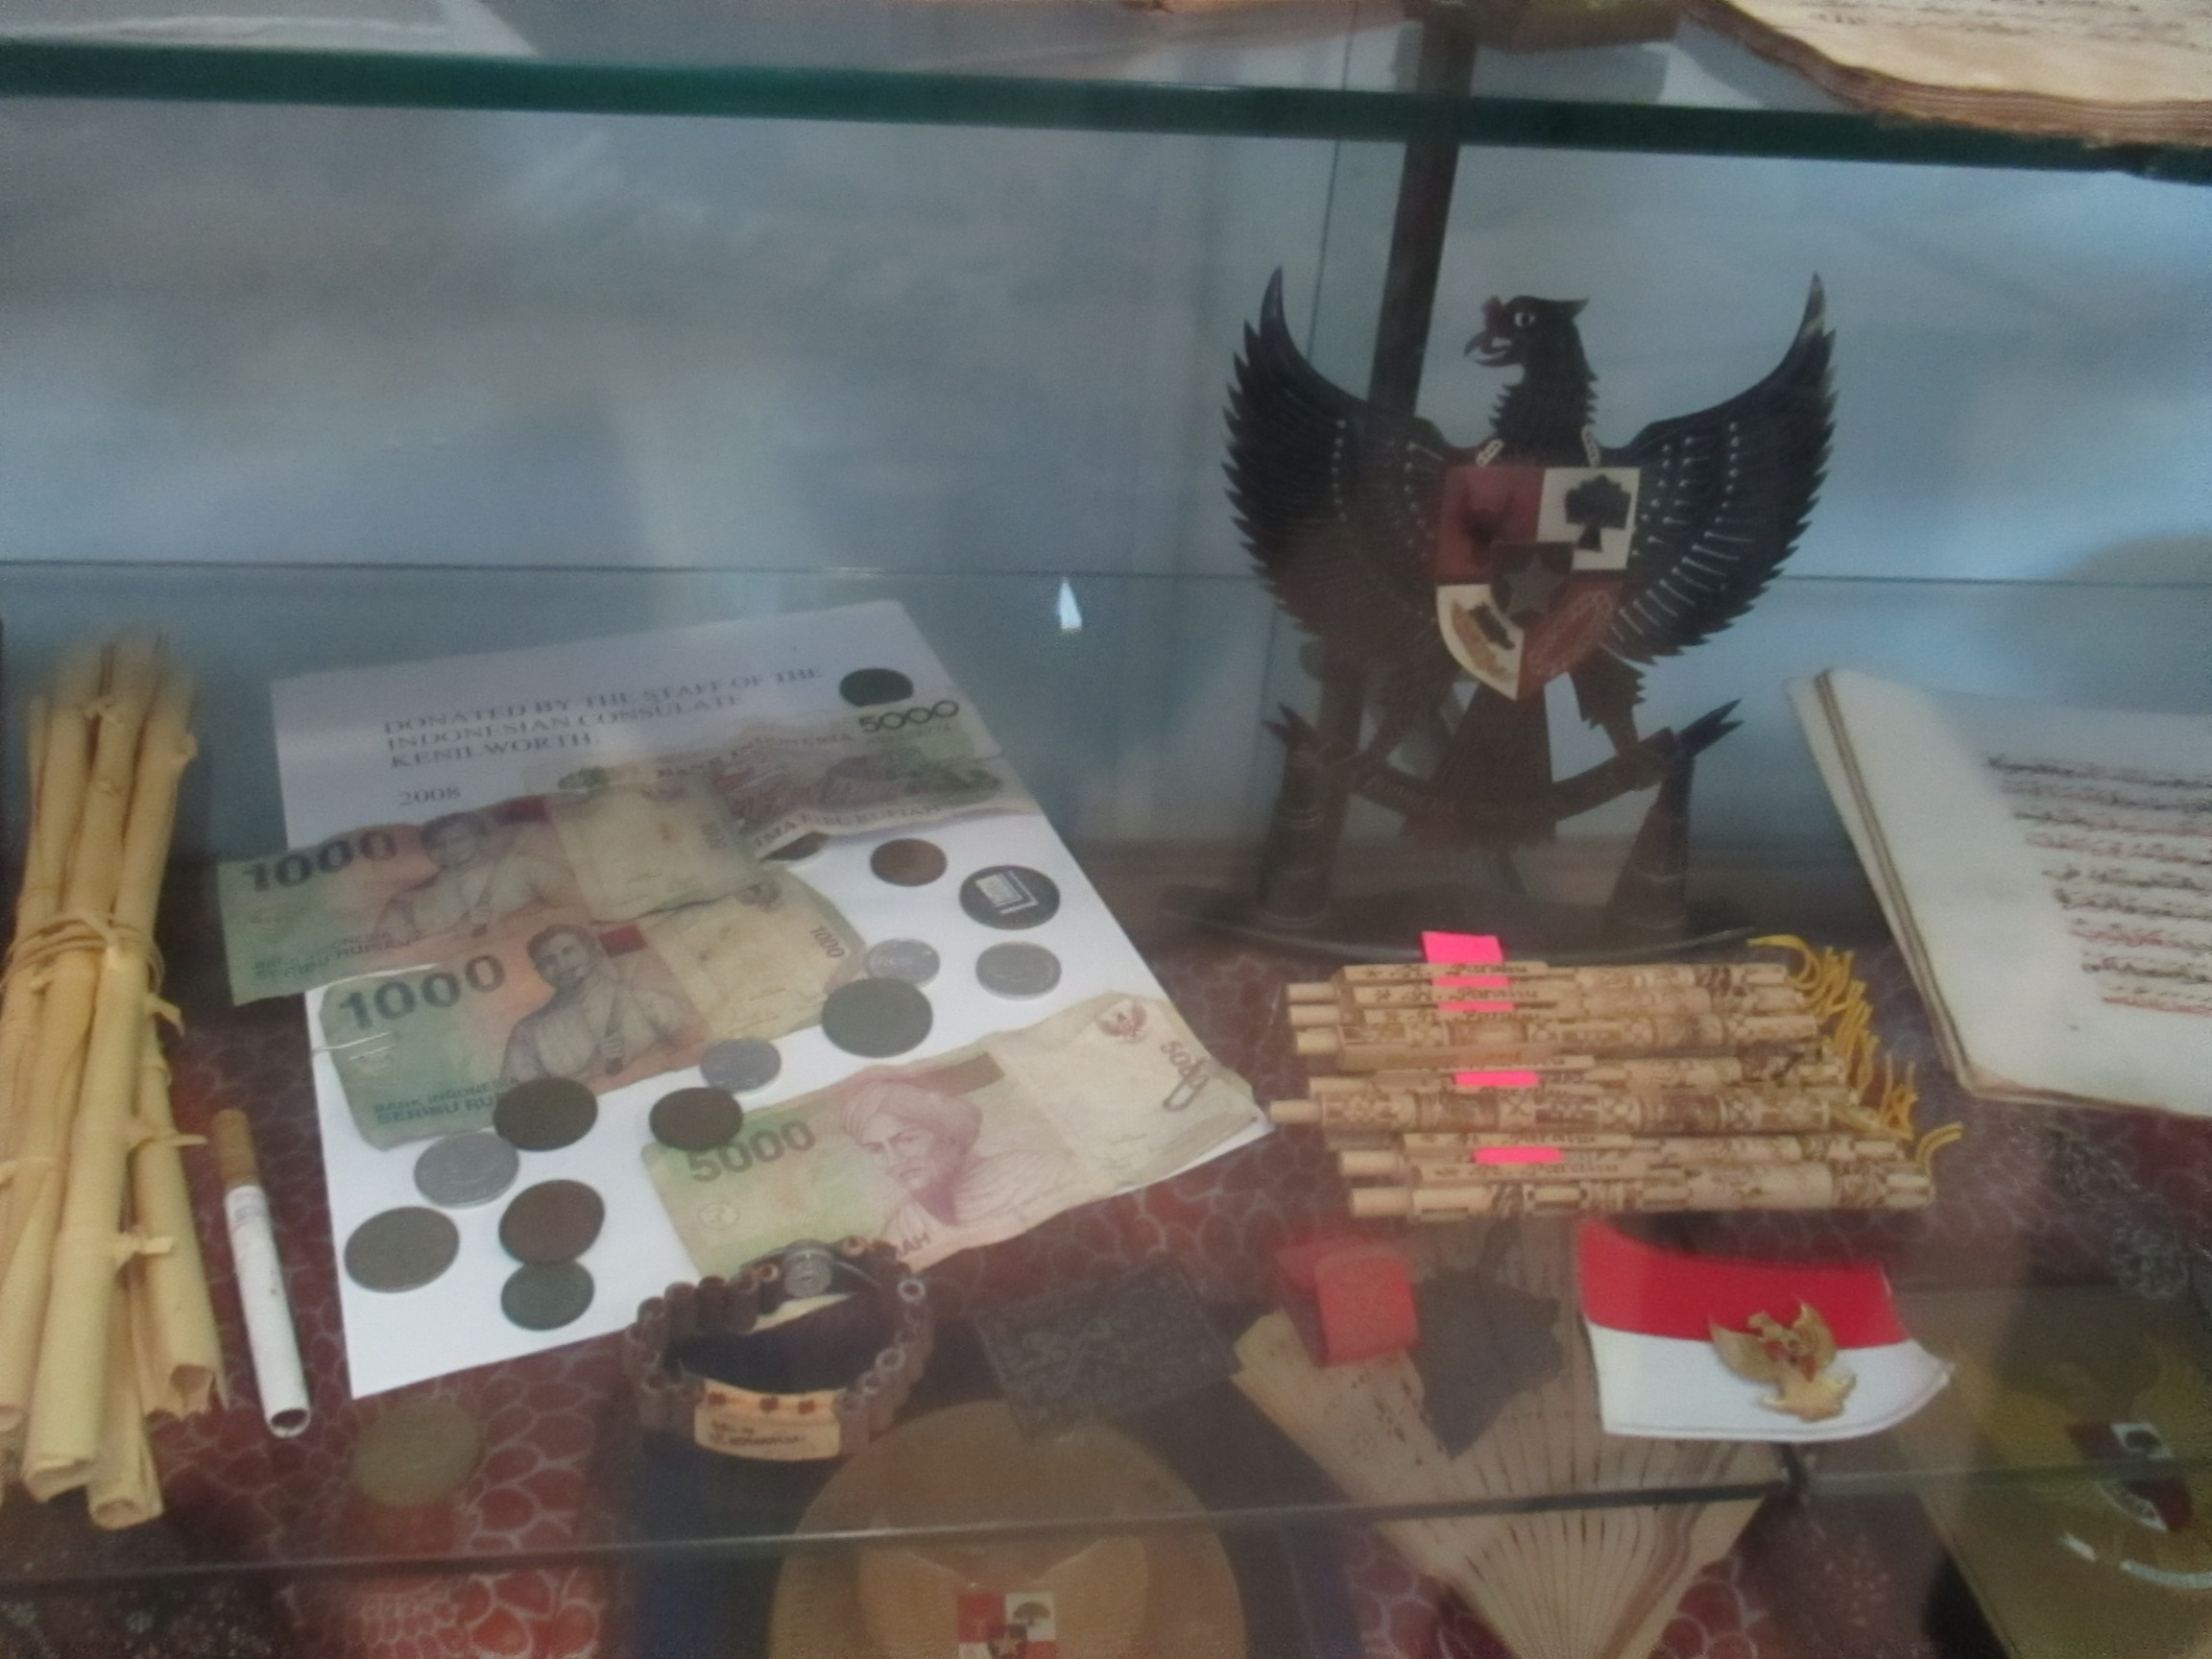 Barang-barang Indonesia di Simons Heritage Museum